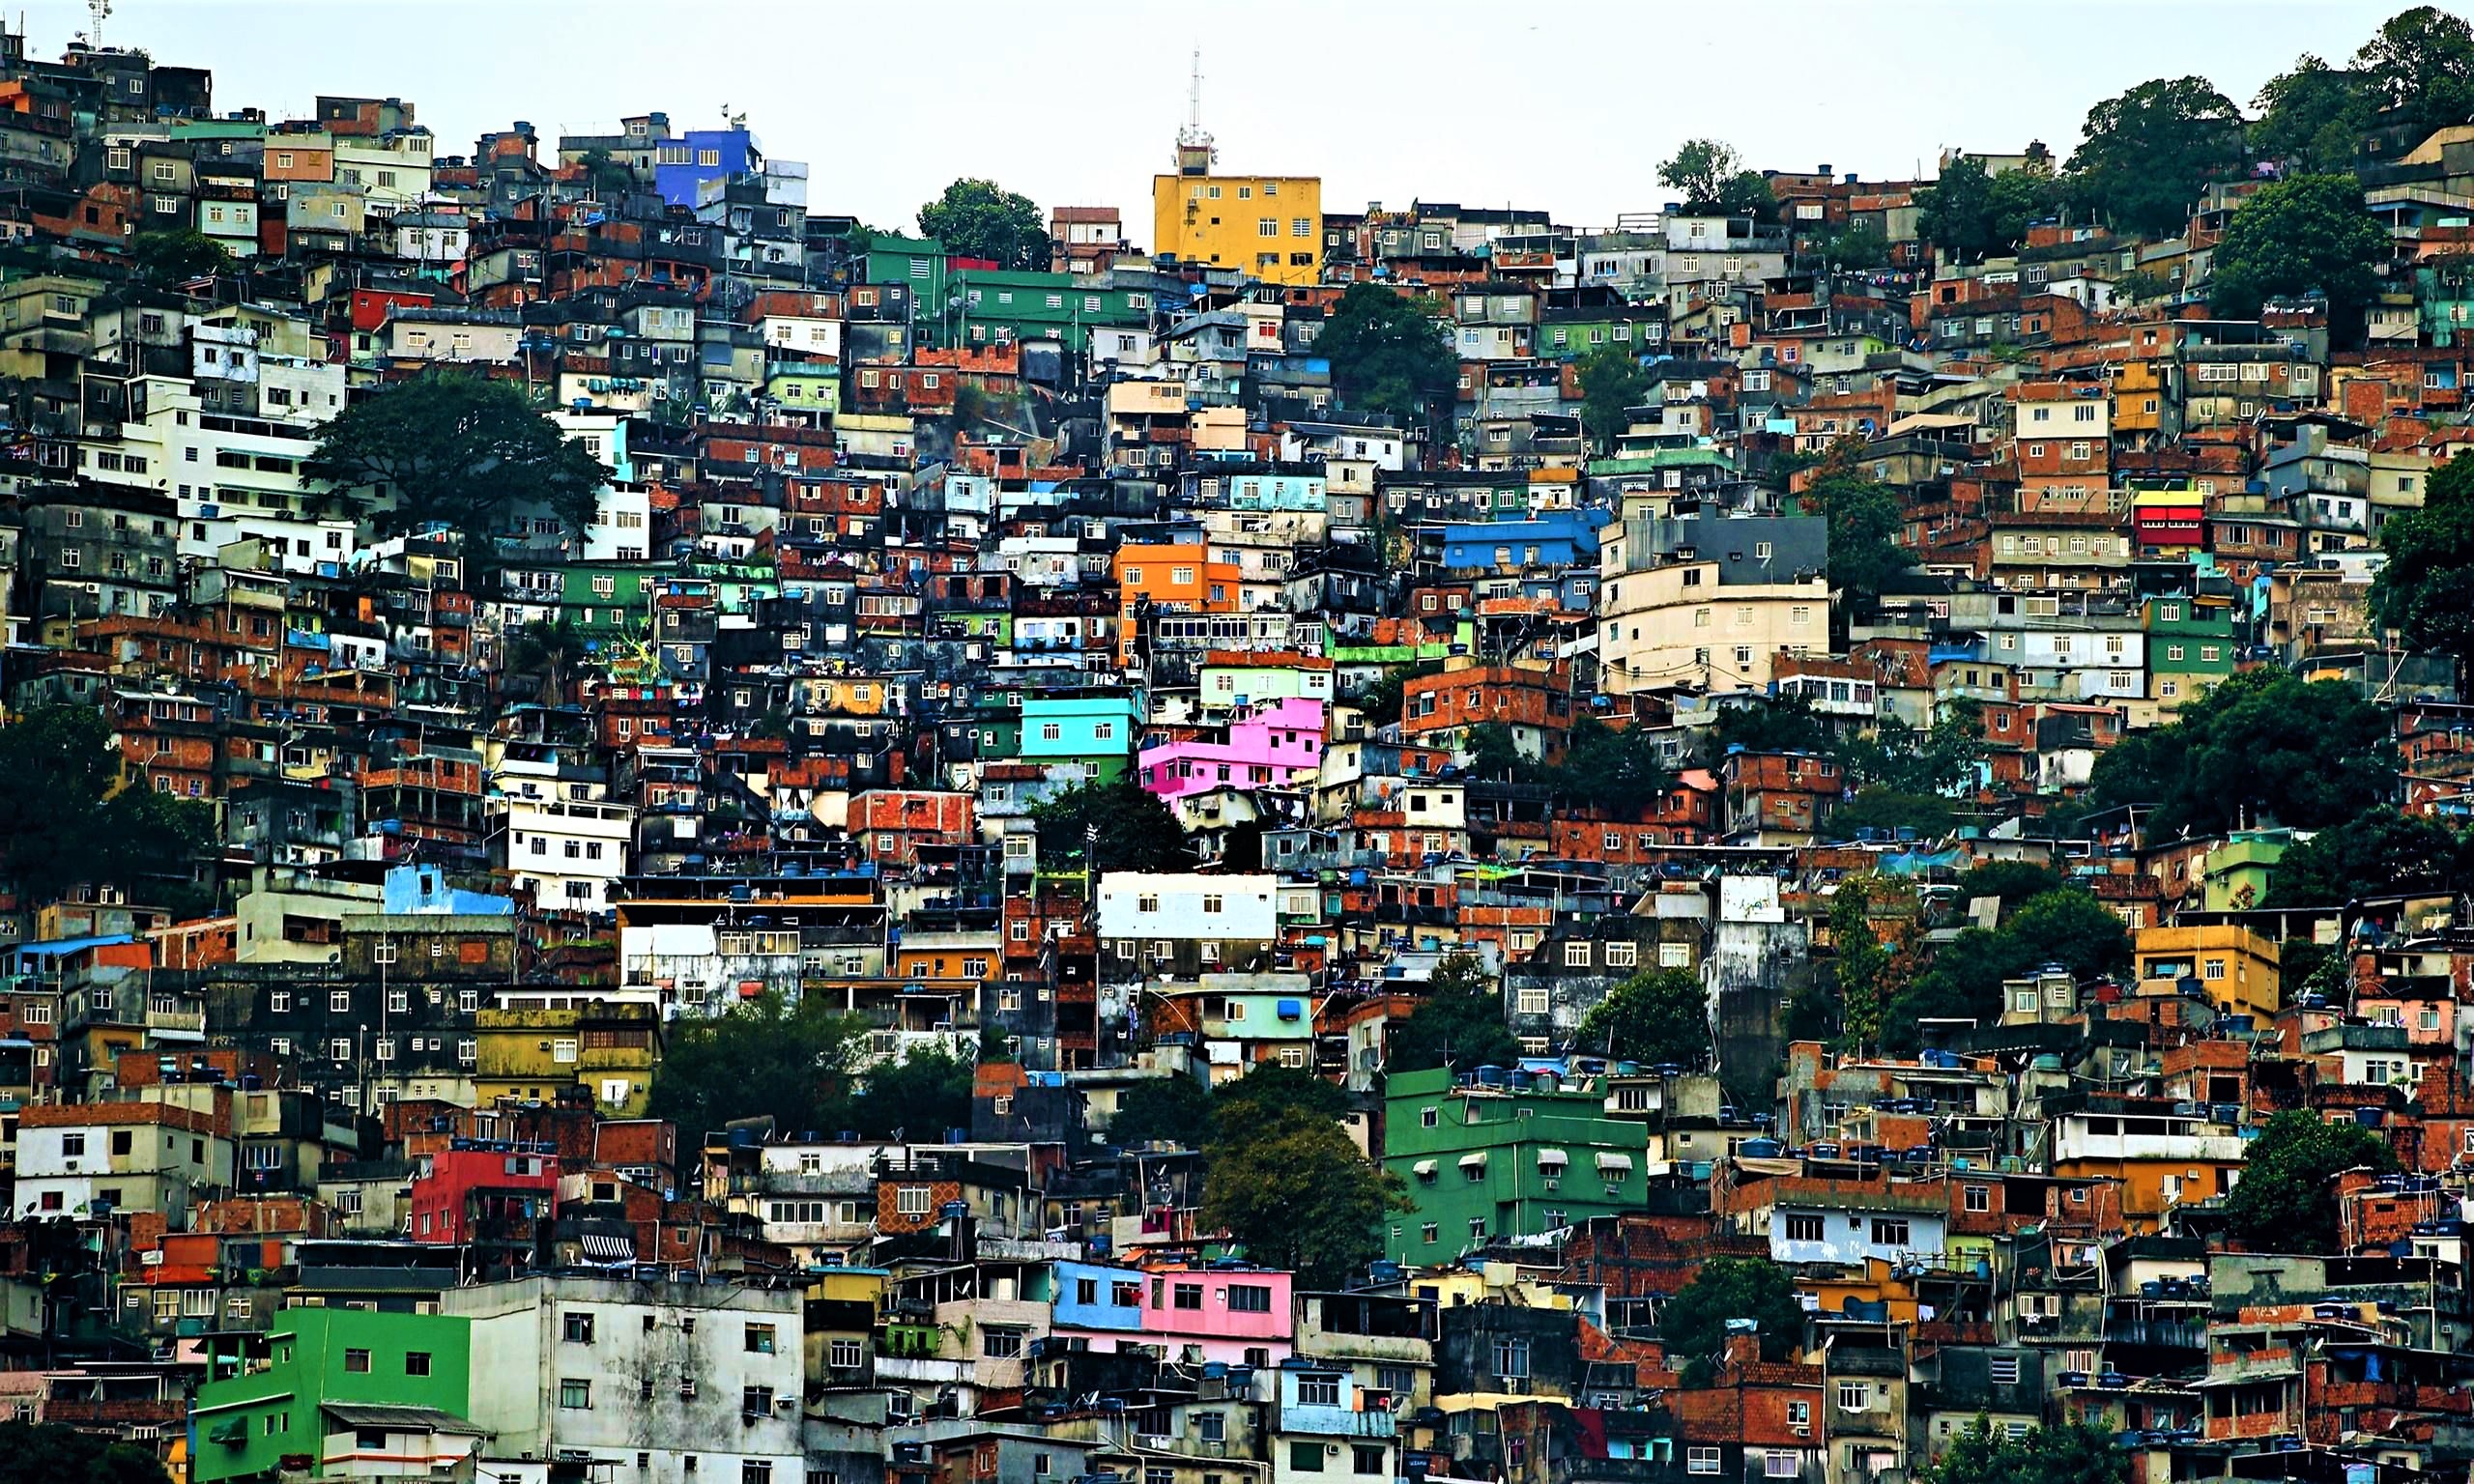 General 2560x1536 town cityscape building slum favela